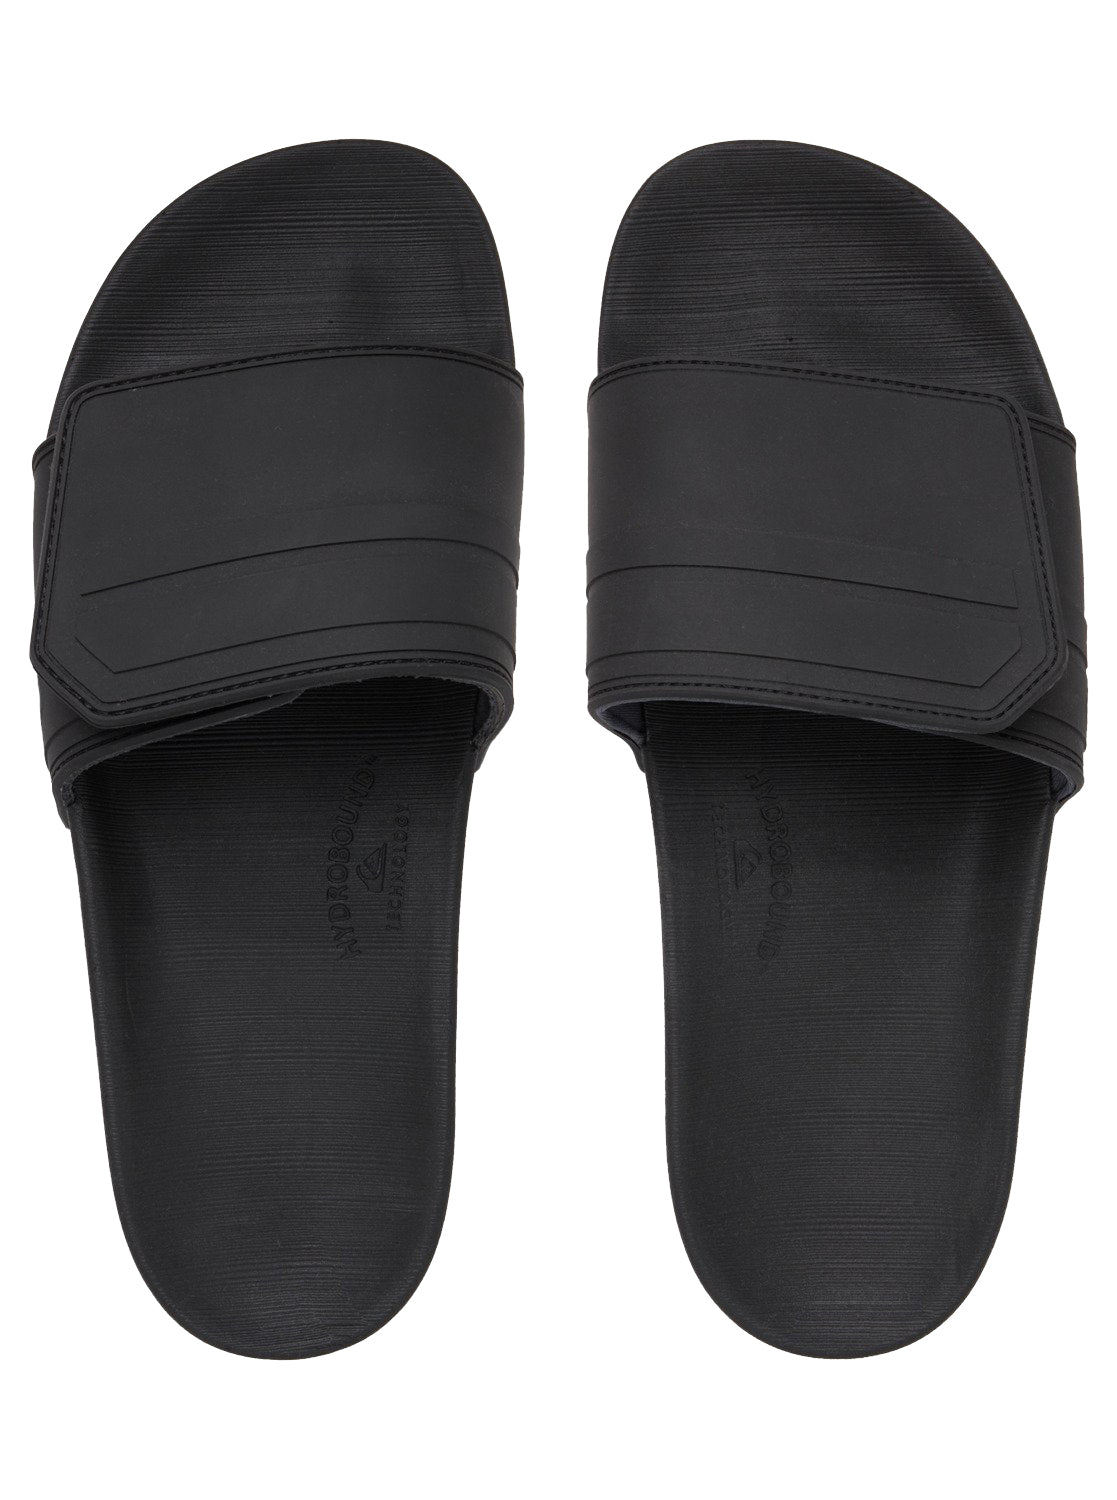 Quiksilver Rivi Slide Adjust Mens Sandal XKSK-Black-Grey-Black 11